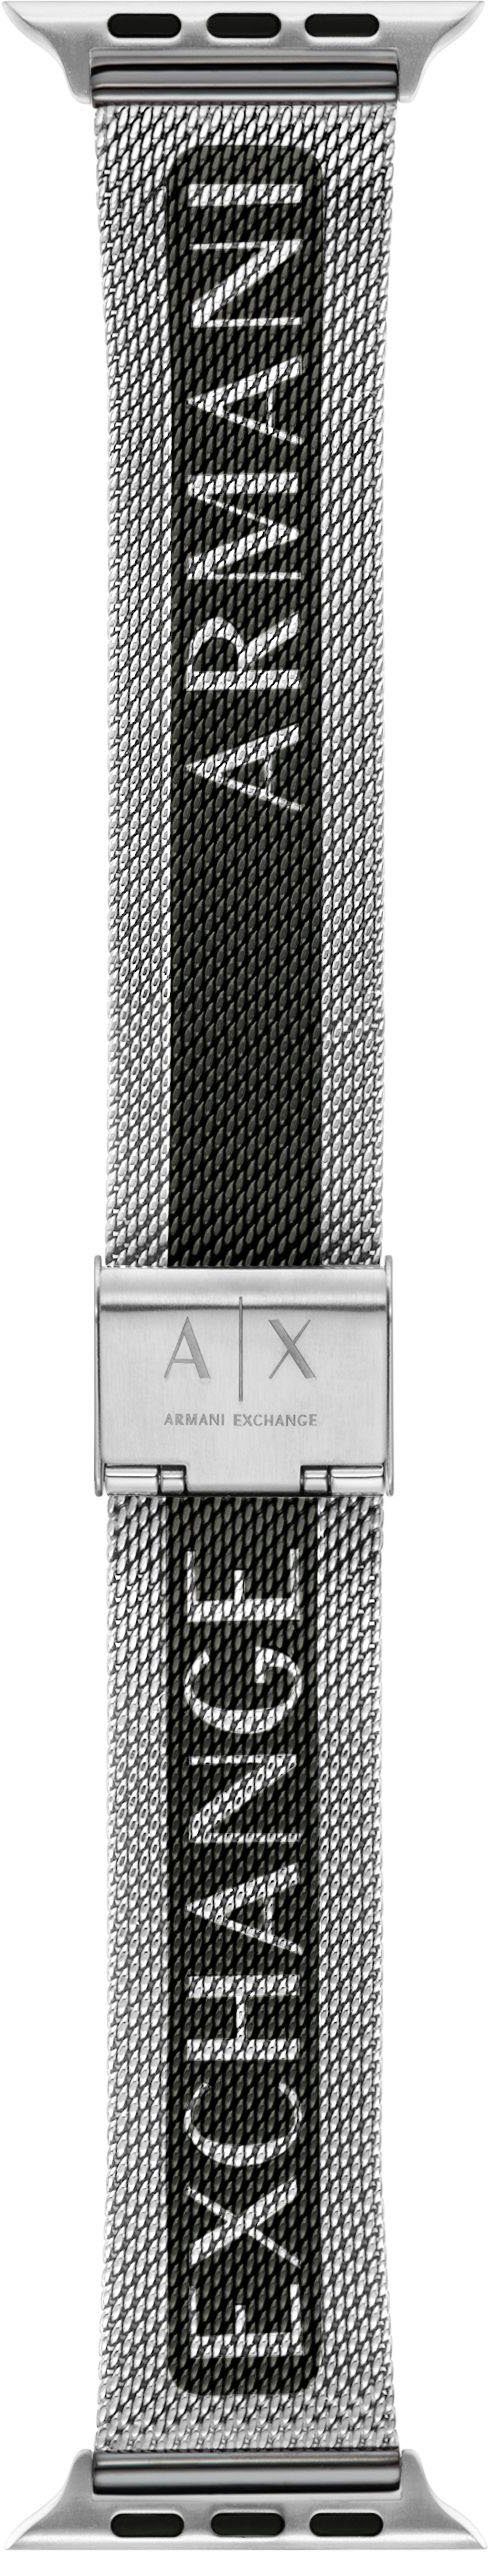 ARMANI EXCHANGE Smartwatch-Armband APPLE BAND, AXS8029, Wechselarmband, Ersatzarmband, passend für die Apple Watch, Edelstahl